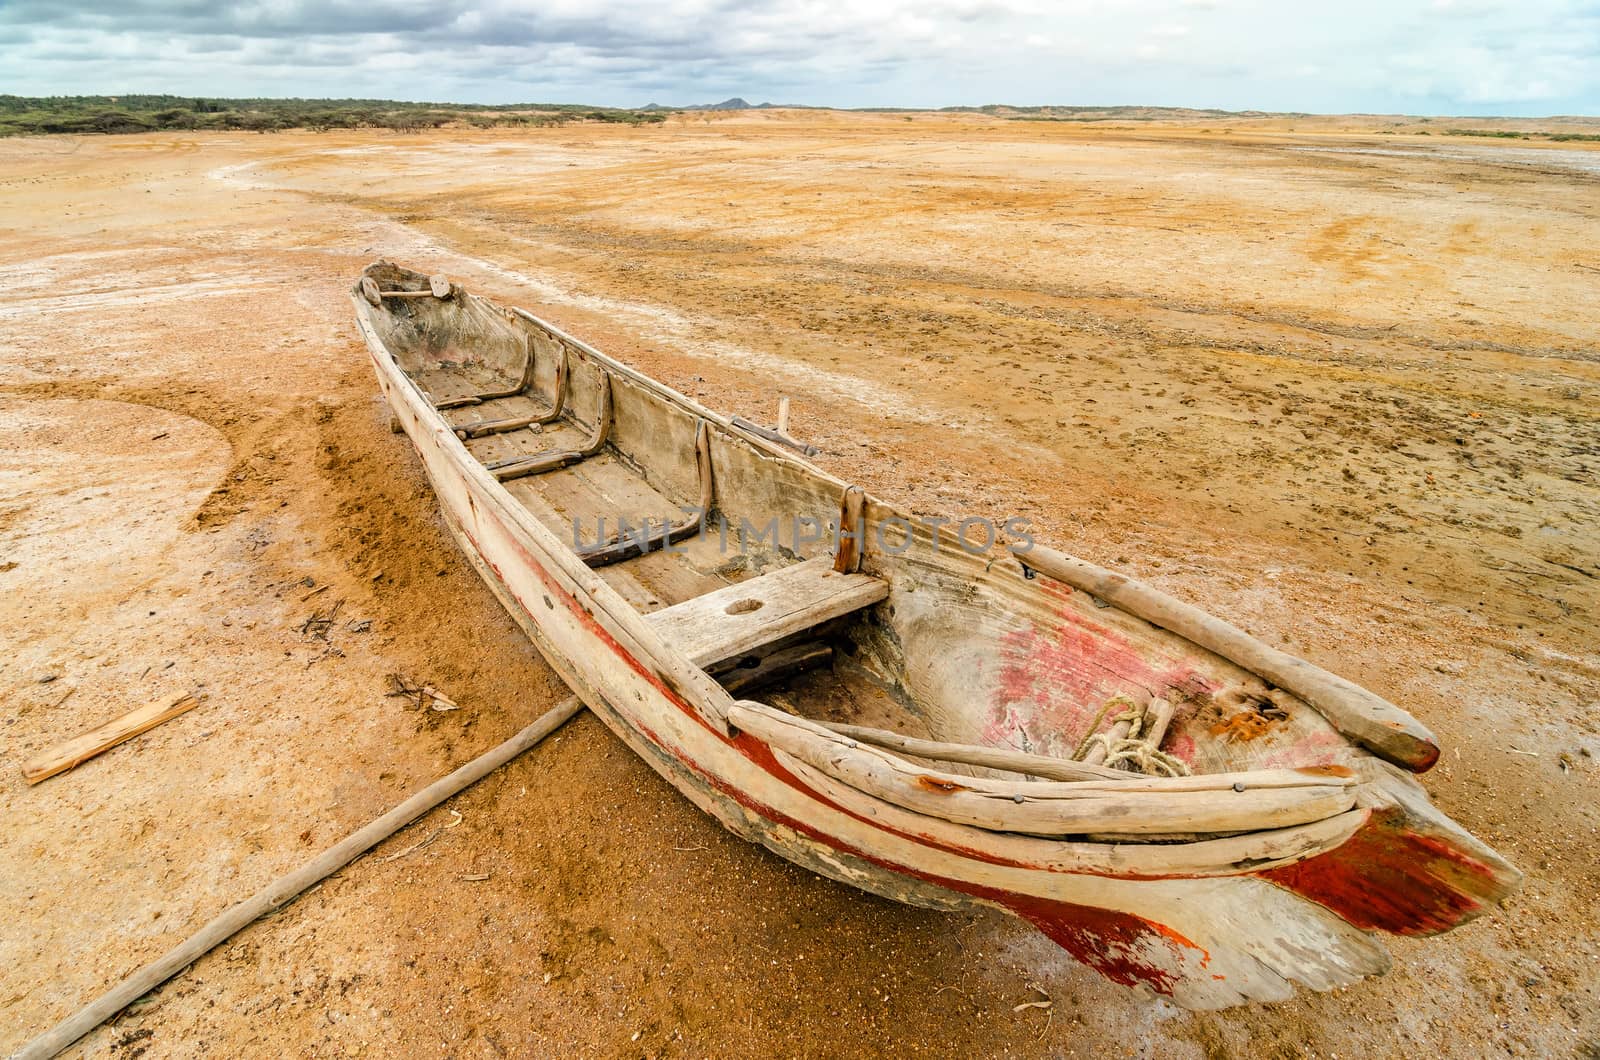 Old dugout canoe stranded in a desert